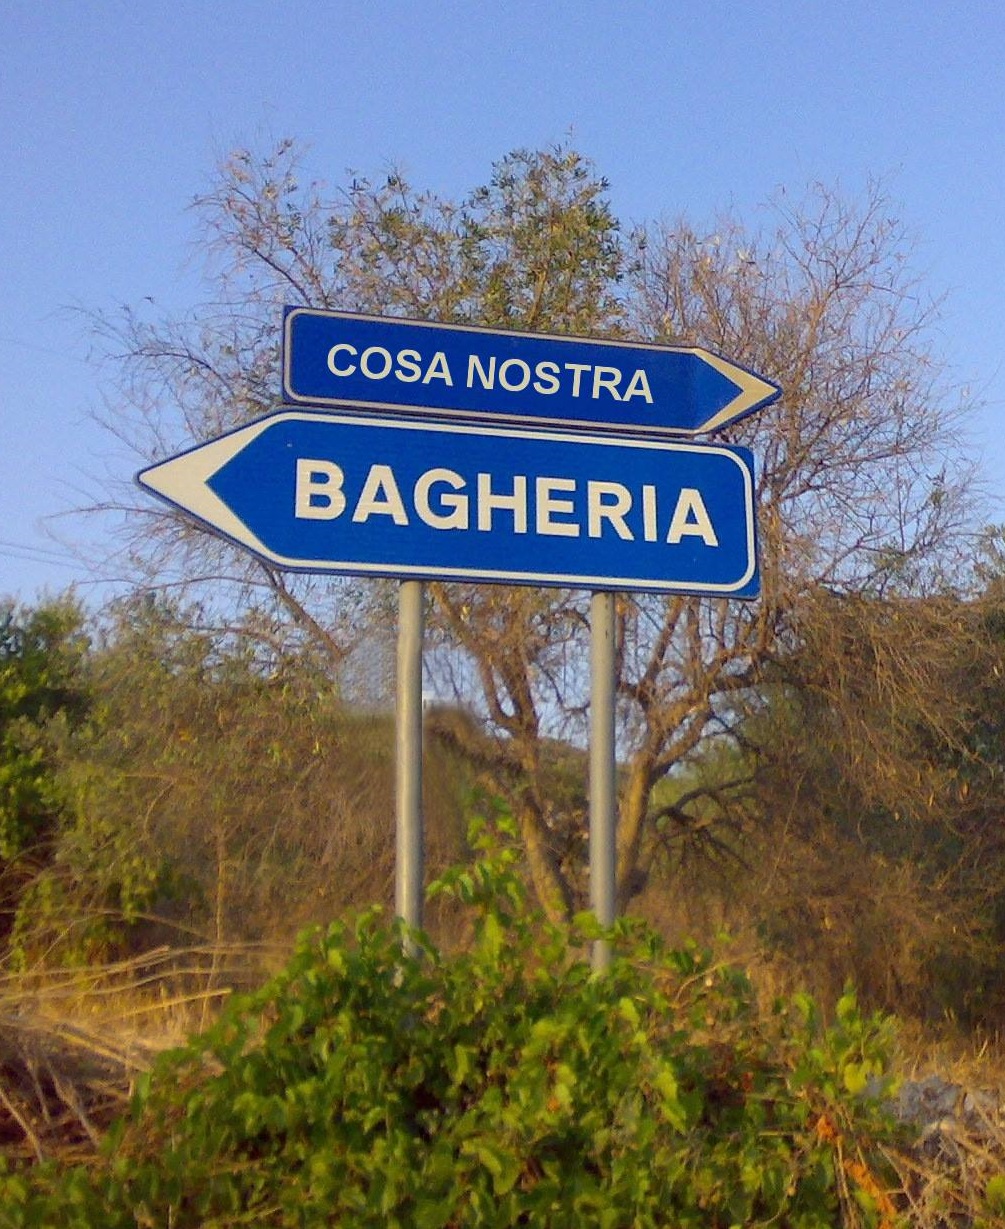 Bagheria-Cosa nostra